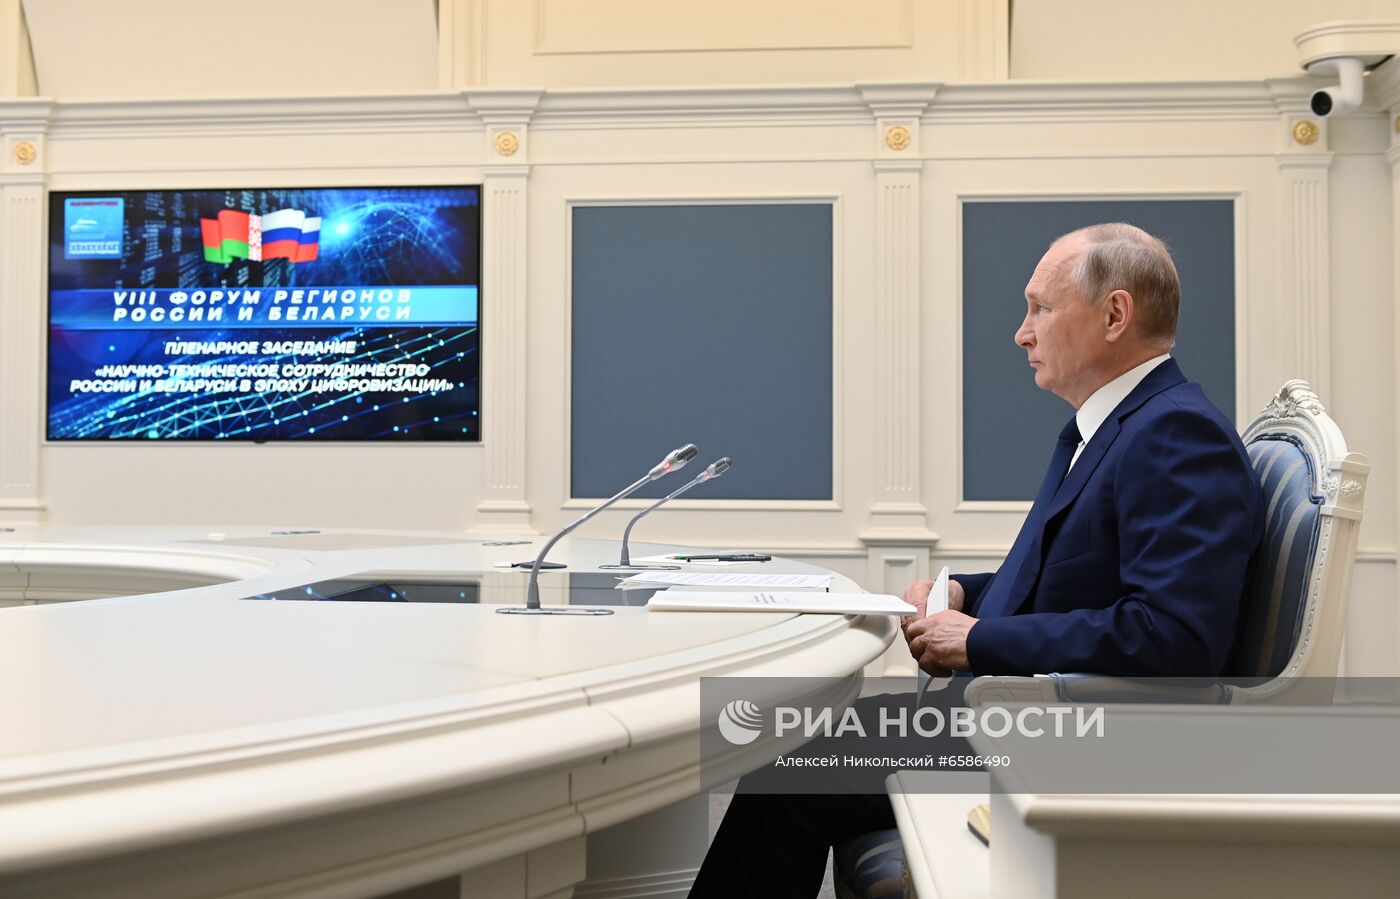 Президент РФ В. Путин принял участие в VIII Форуме регионов России и Белоруссии